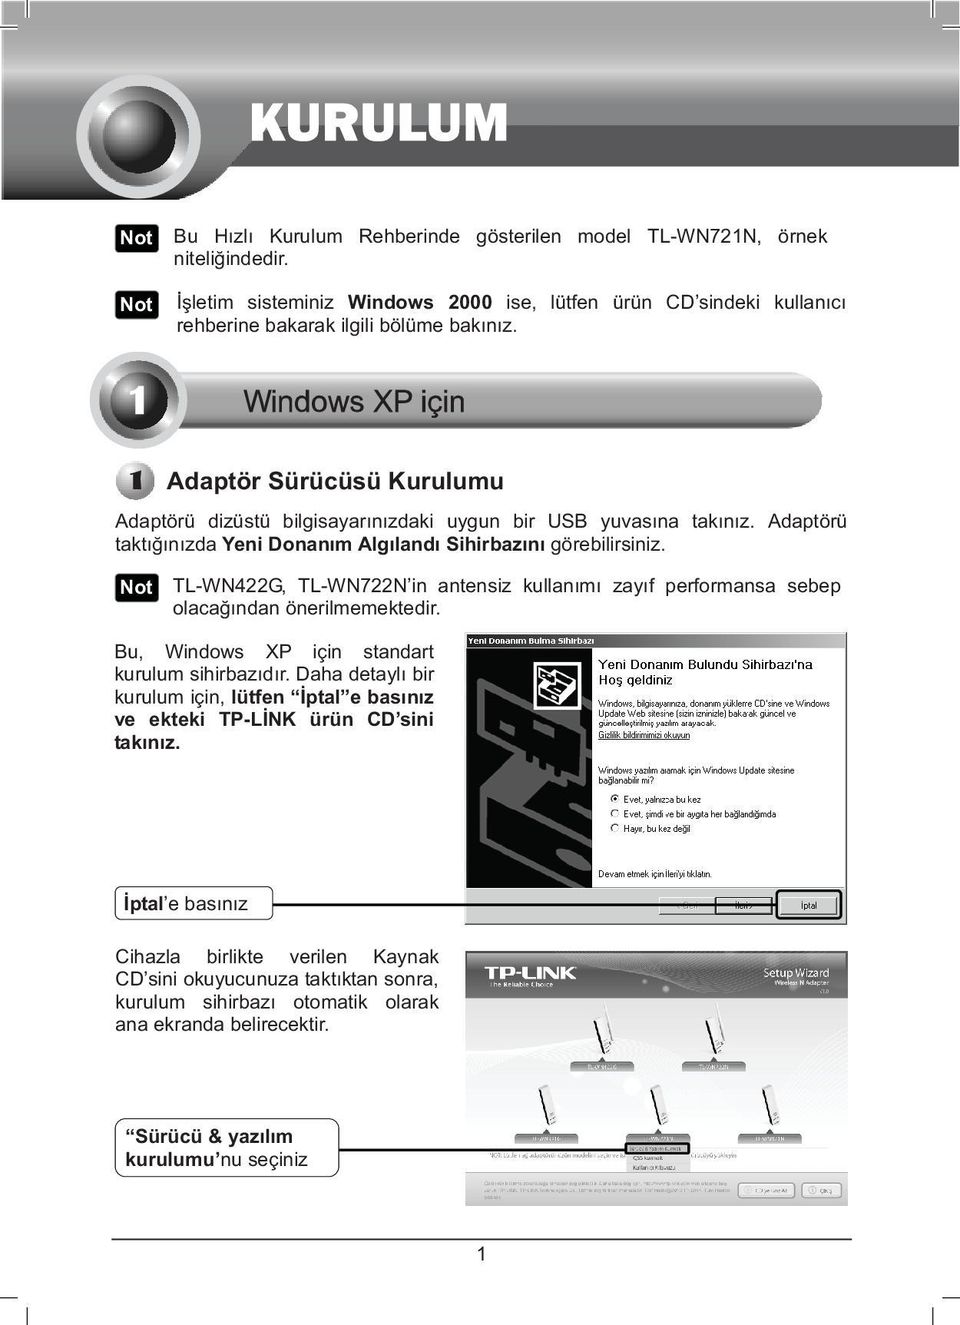 TL-WN422G, TL-WN722N in antensiz kullanm zayf performansa sebep olacandan önerilmemektedir. Bu, Windows XP için standart kurulum sihirbazdr.